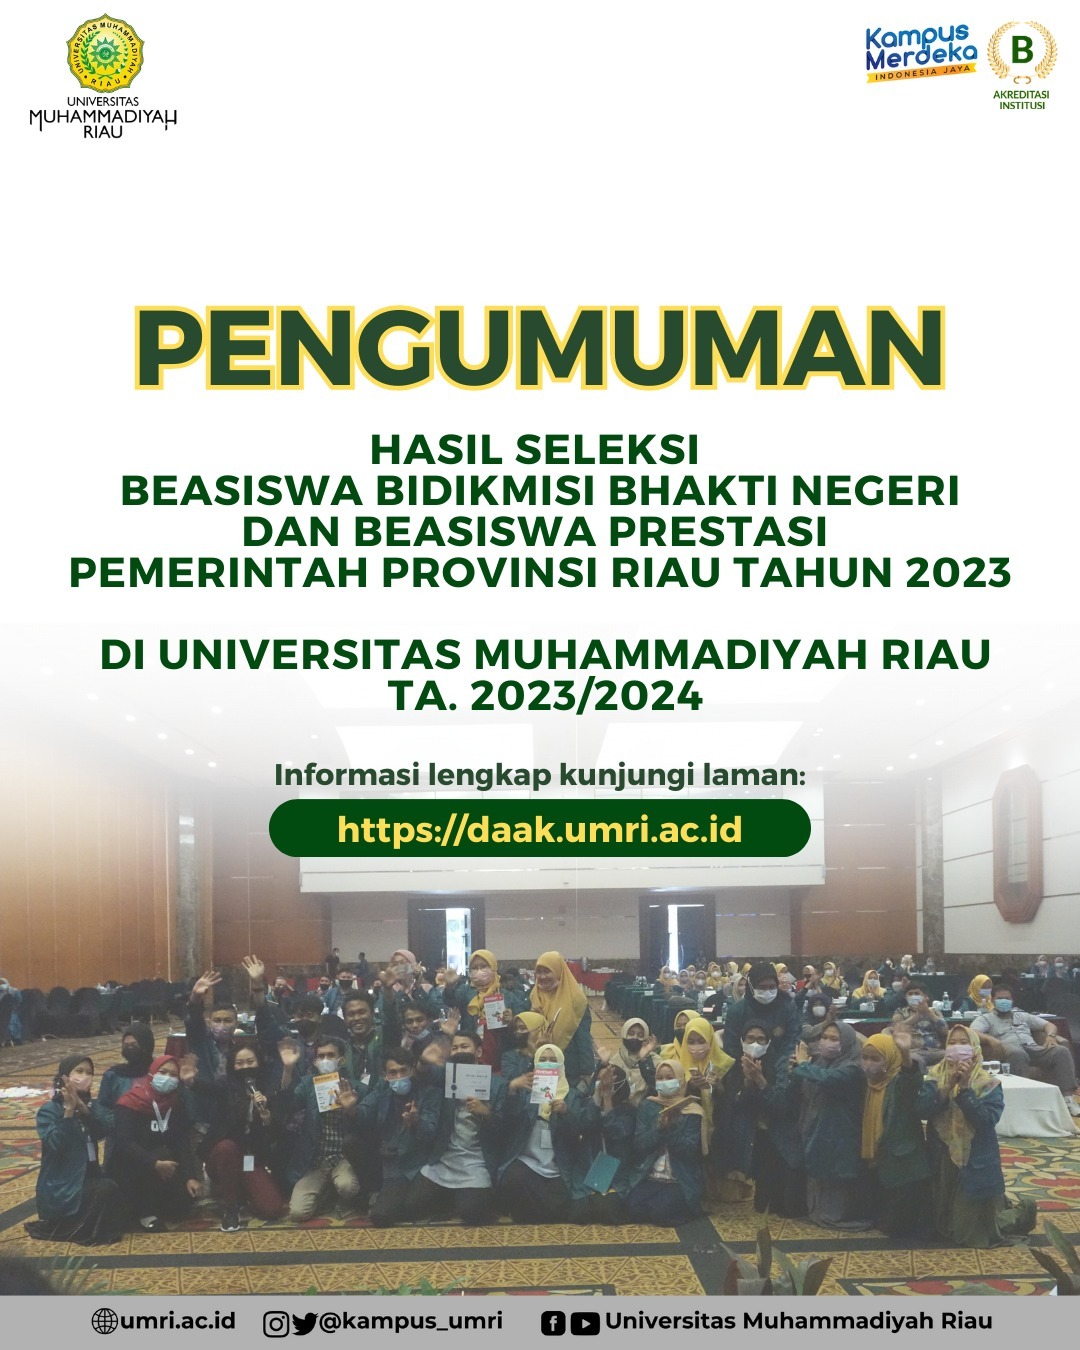 Pengumuman Hasil Seleksi Beasiswa Bidikmisi Bhakti Negeri dan Beasiswa Prestasi Pemerintah Provinsi Riau TA. 2023